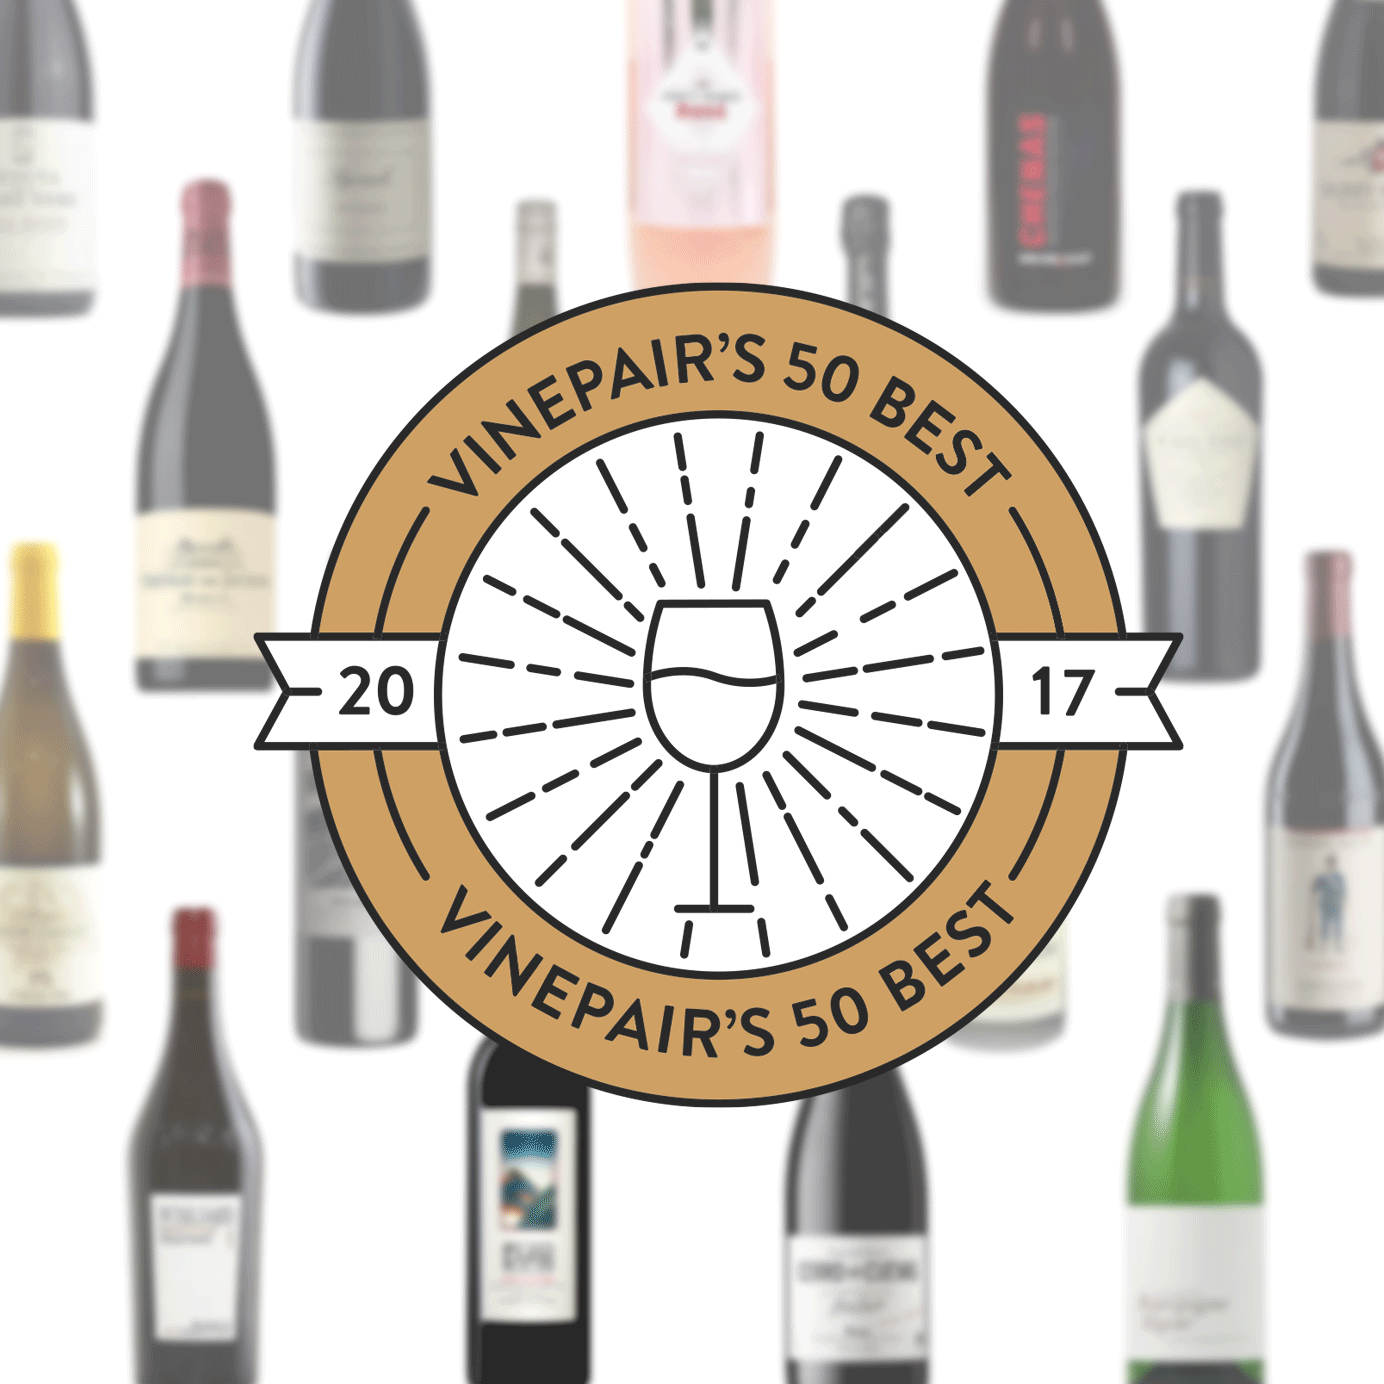 The 50 Best Wines of 2017 VinePair